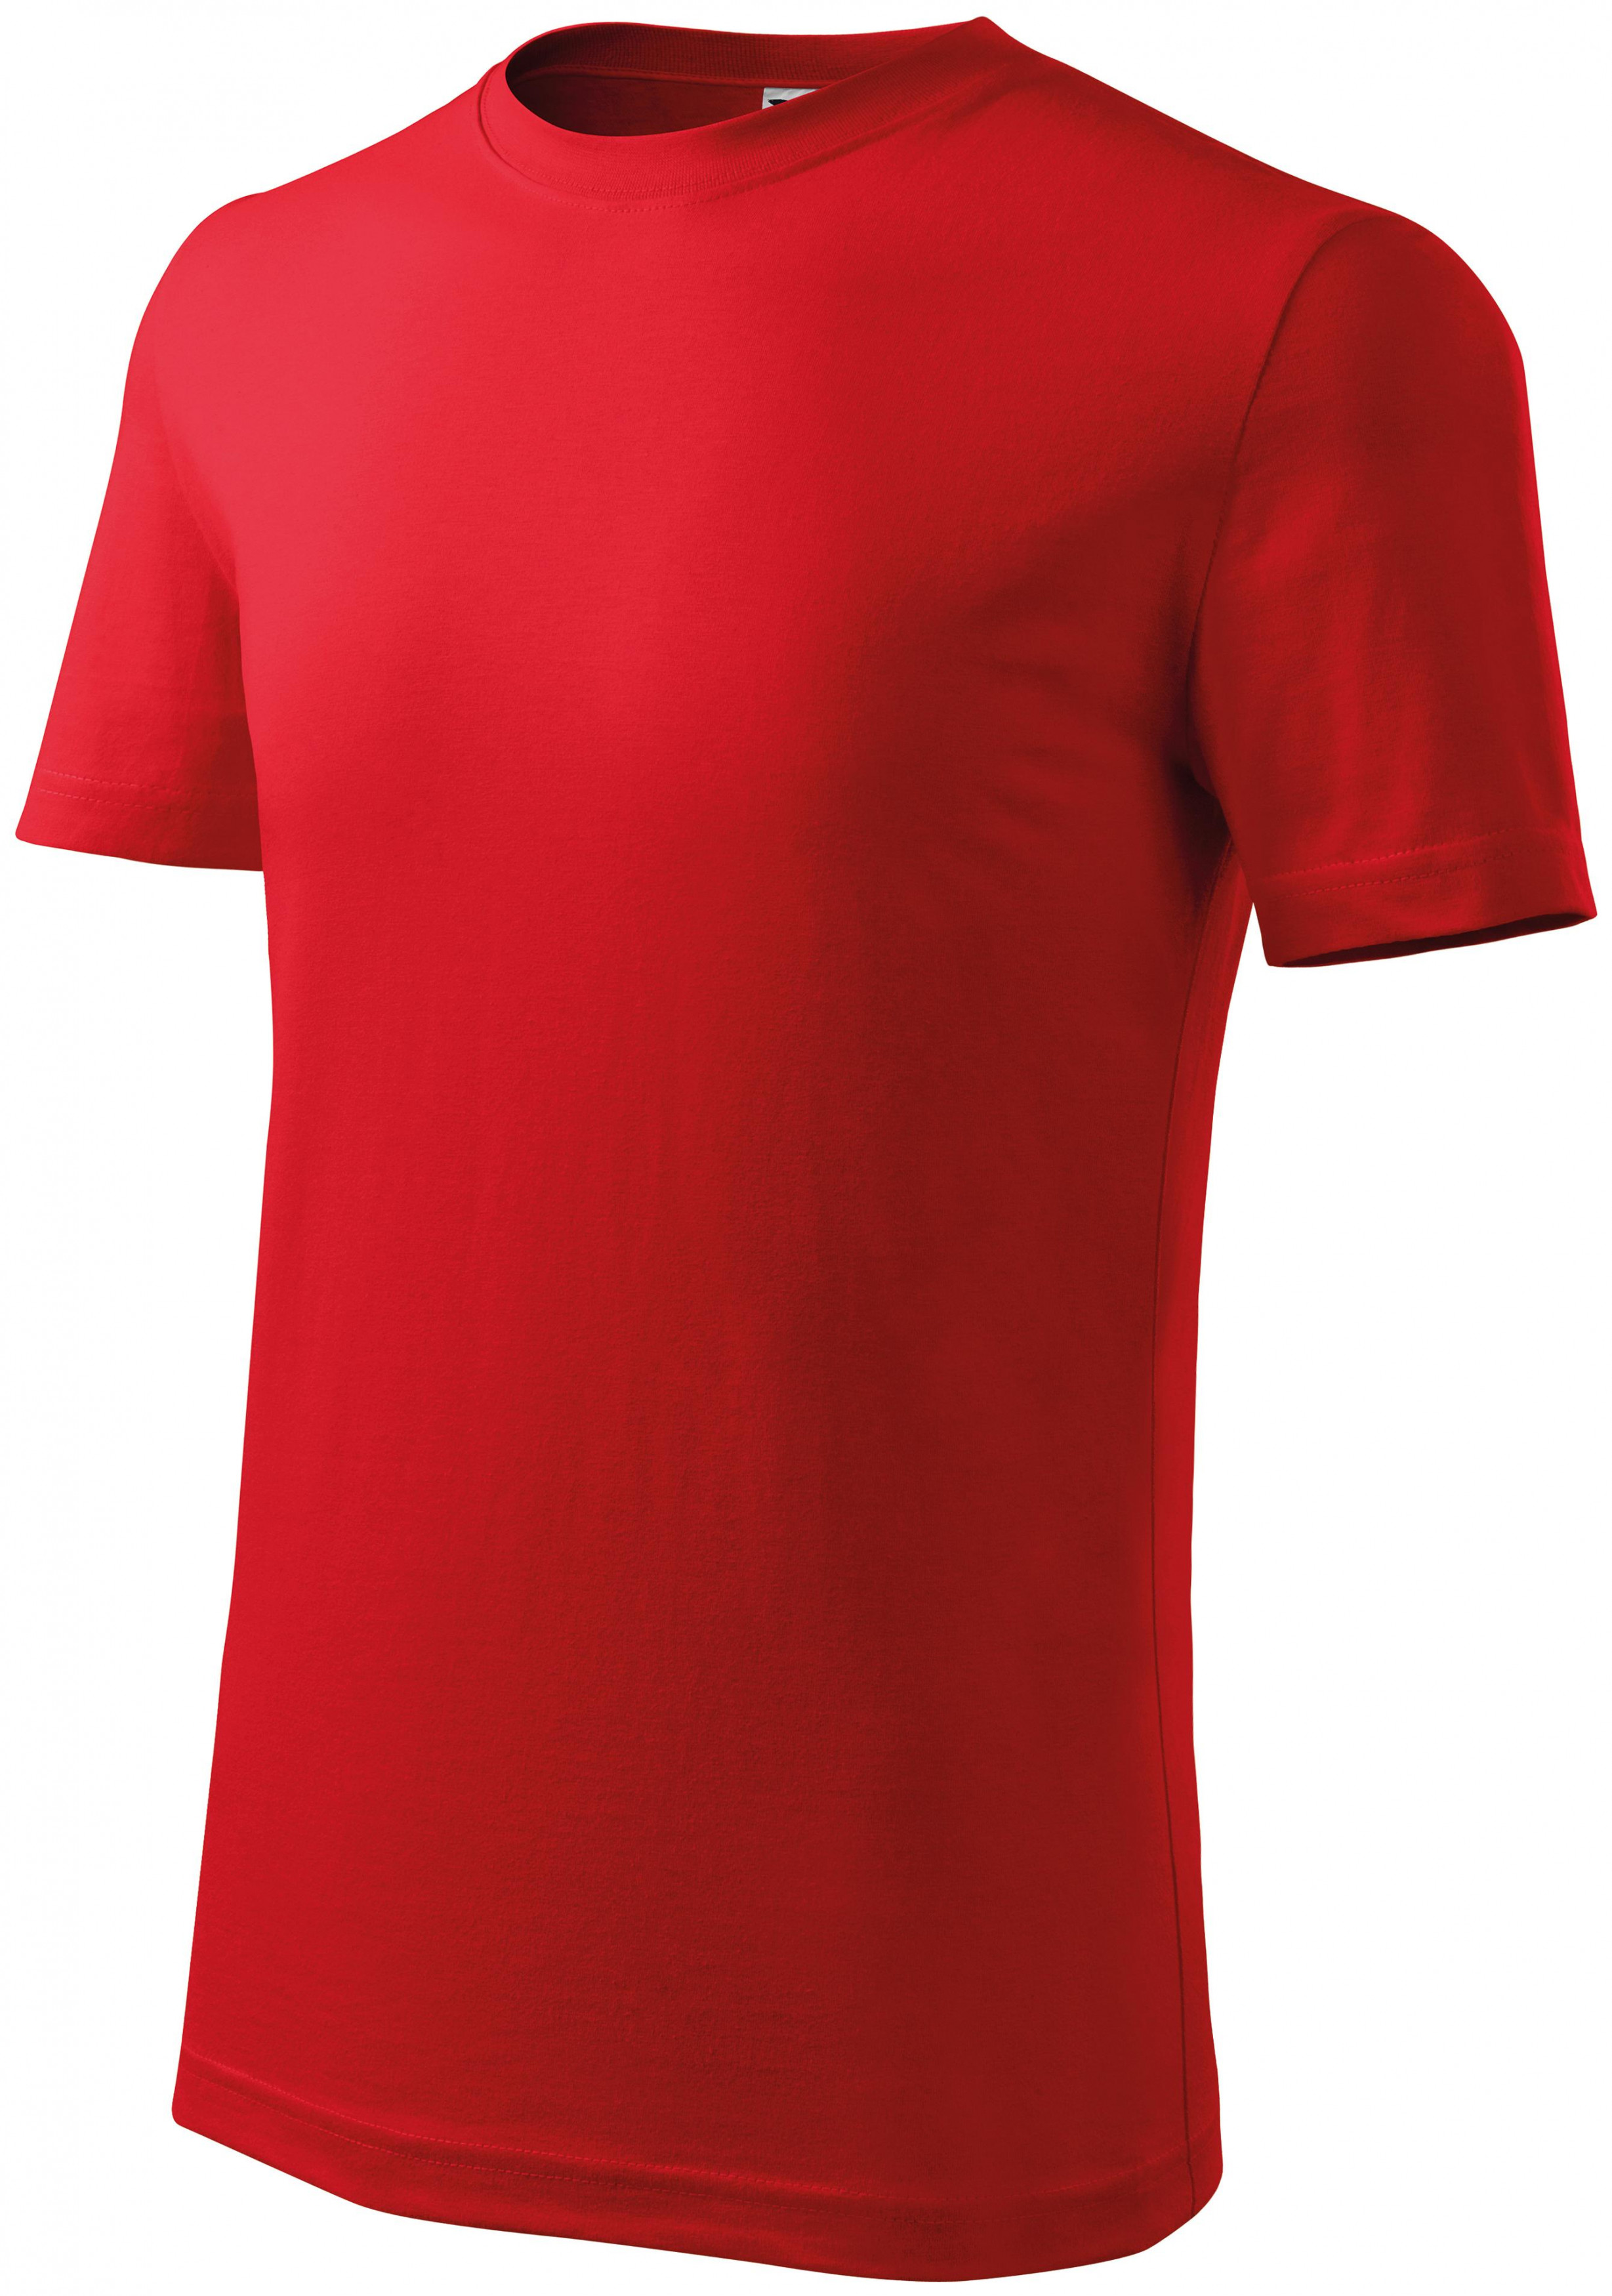 Detské tričko ľahšie, červená, 146cm / 10rokov